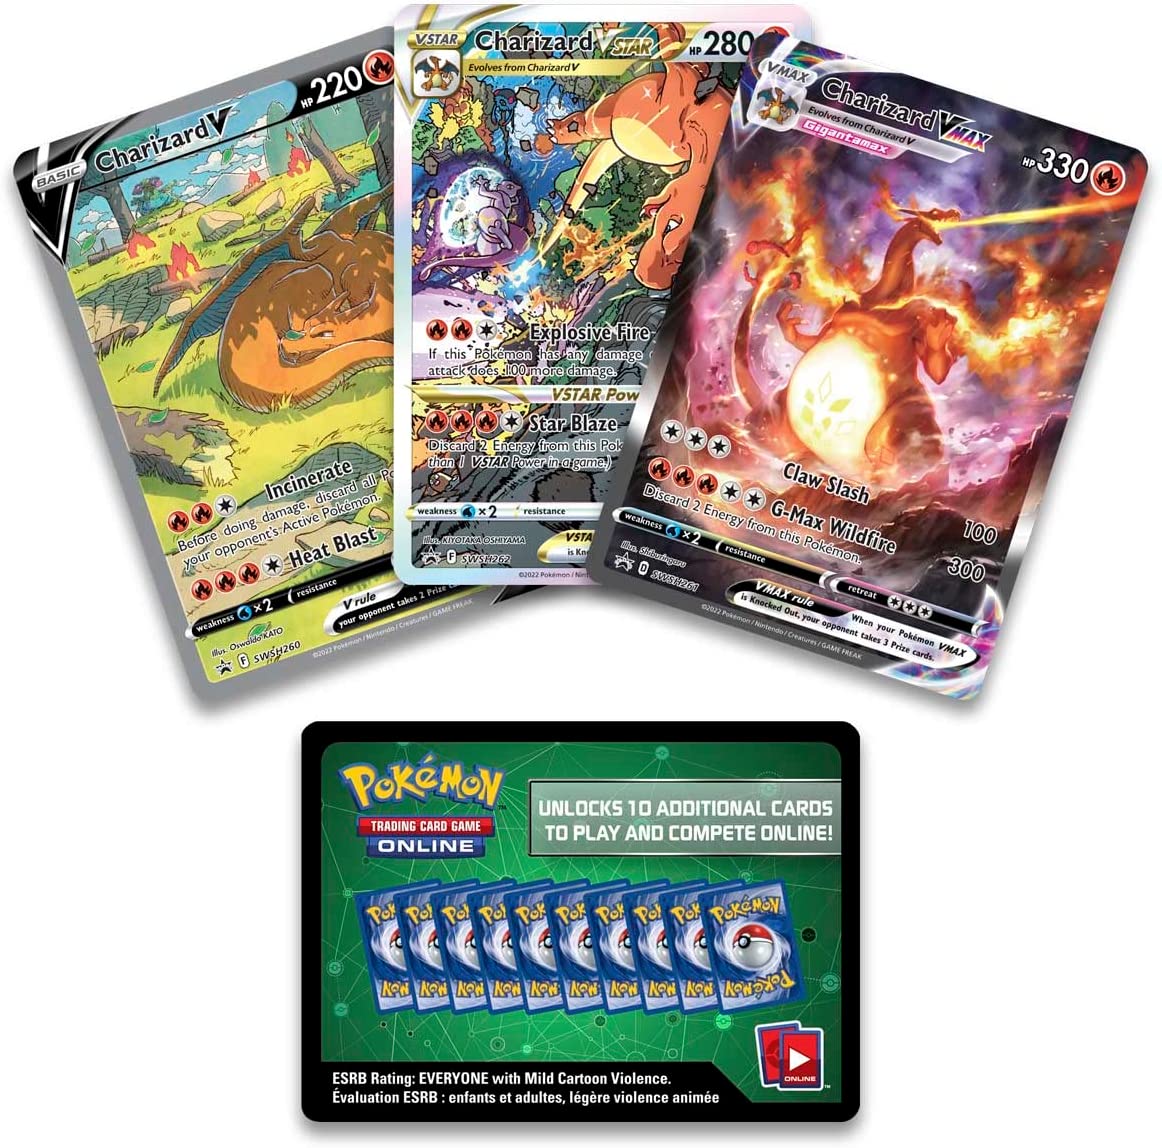 Pokémon Spada & Scudo Collezione Ultra Premium Charizard (IT)